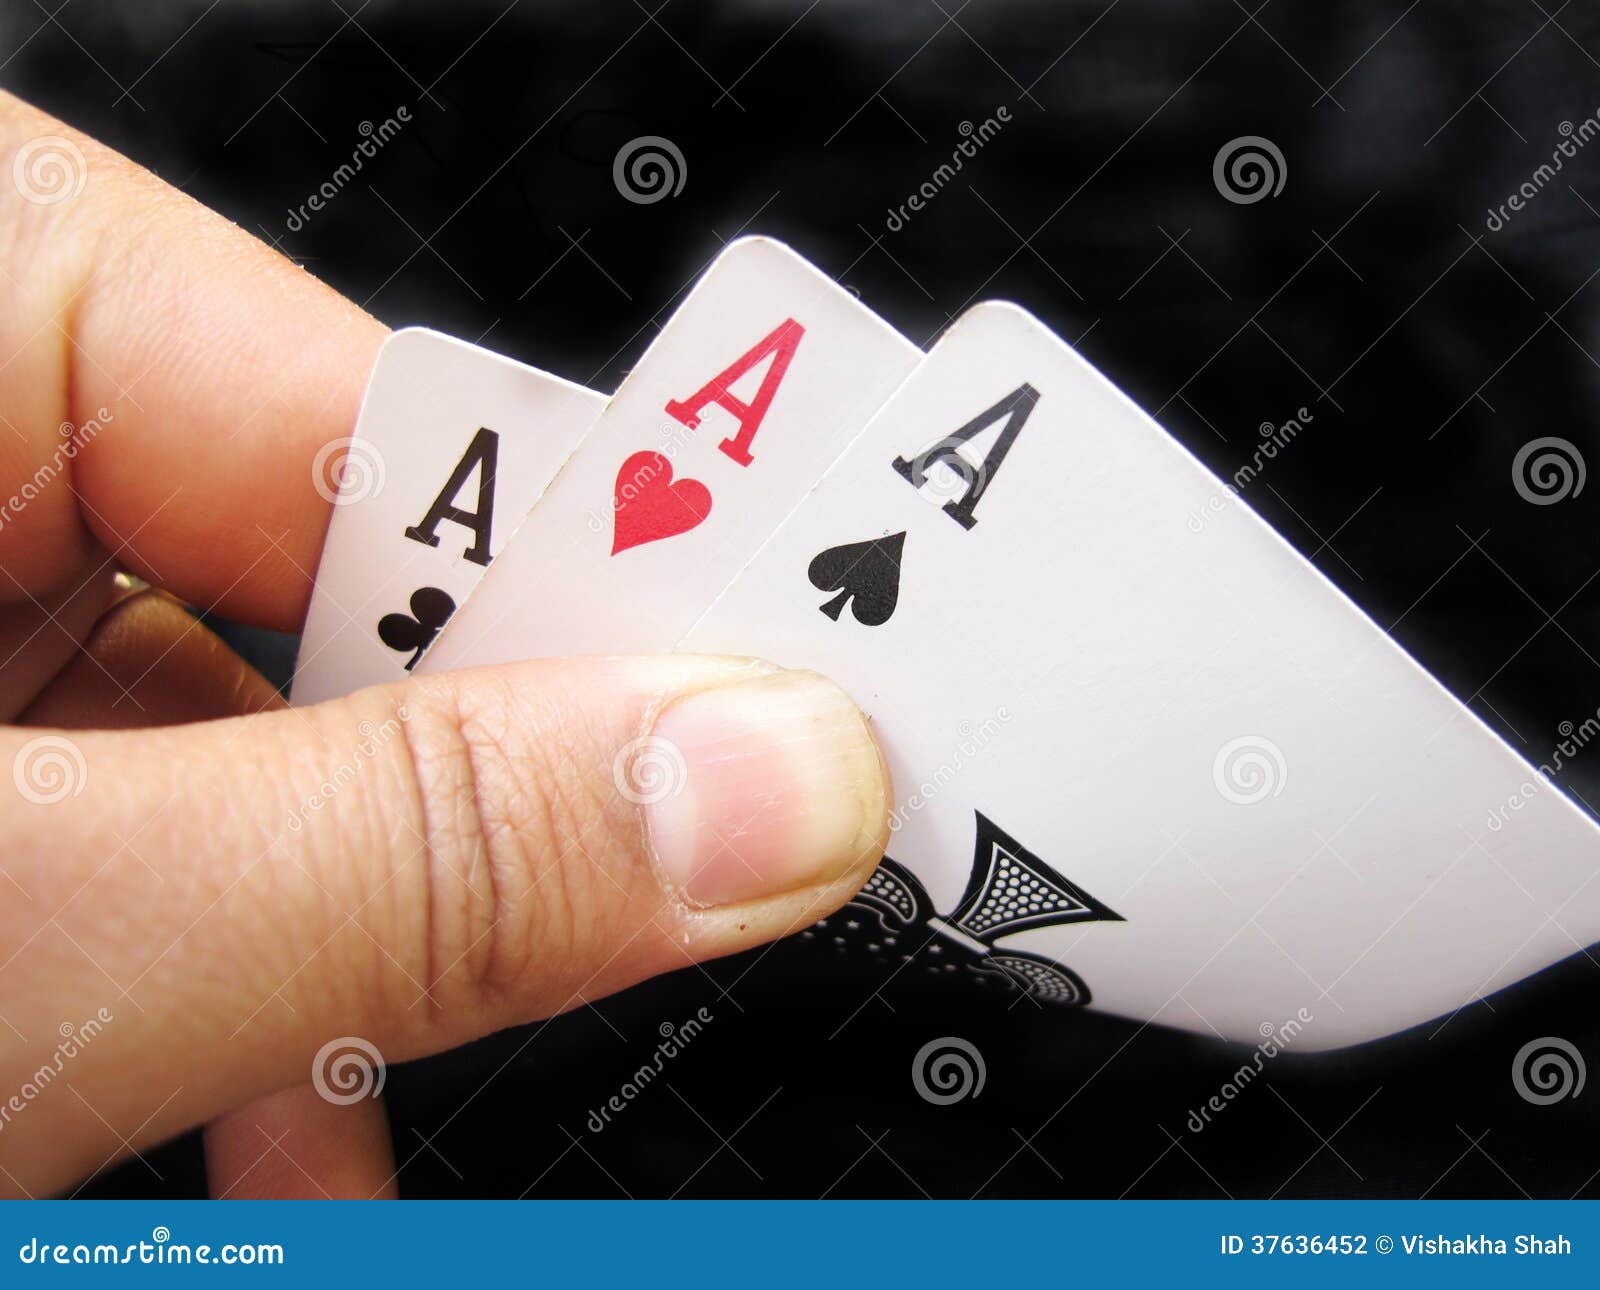 Spielen von Karten--Dreiassen. Hände, die drei Asse von Spielkarten auf Schwarzem halten.